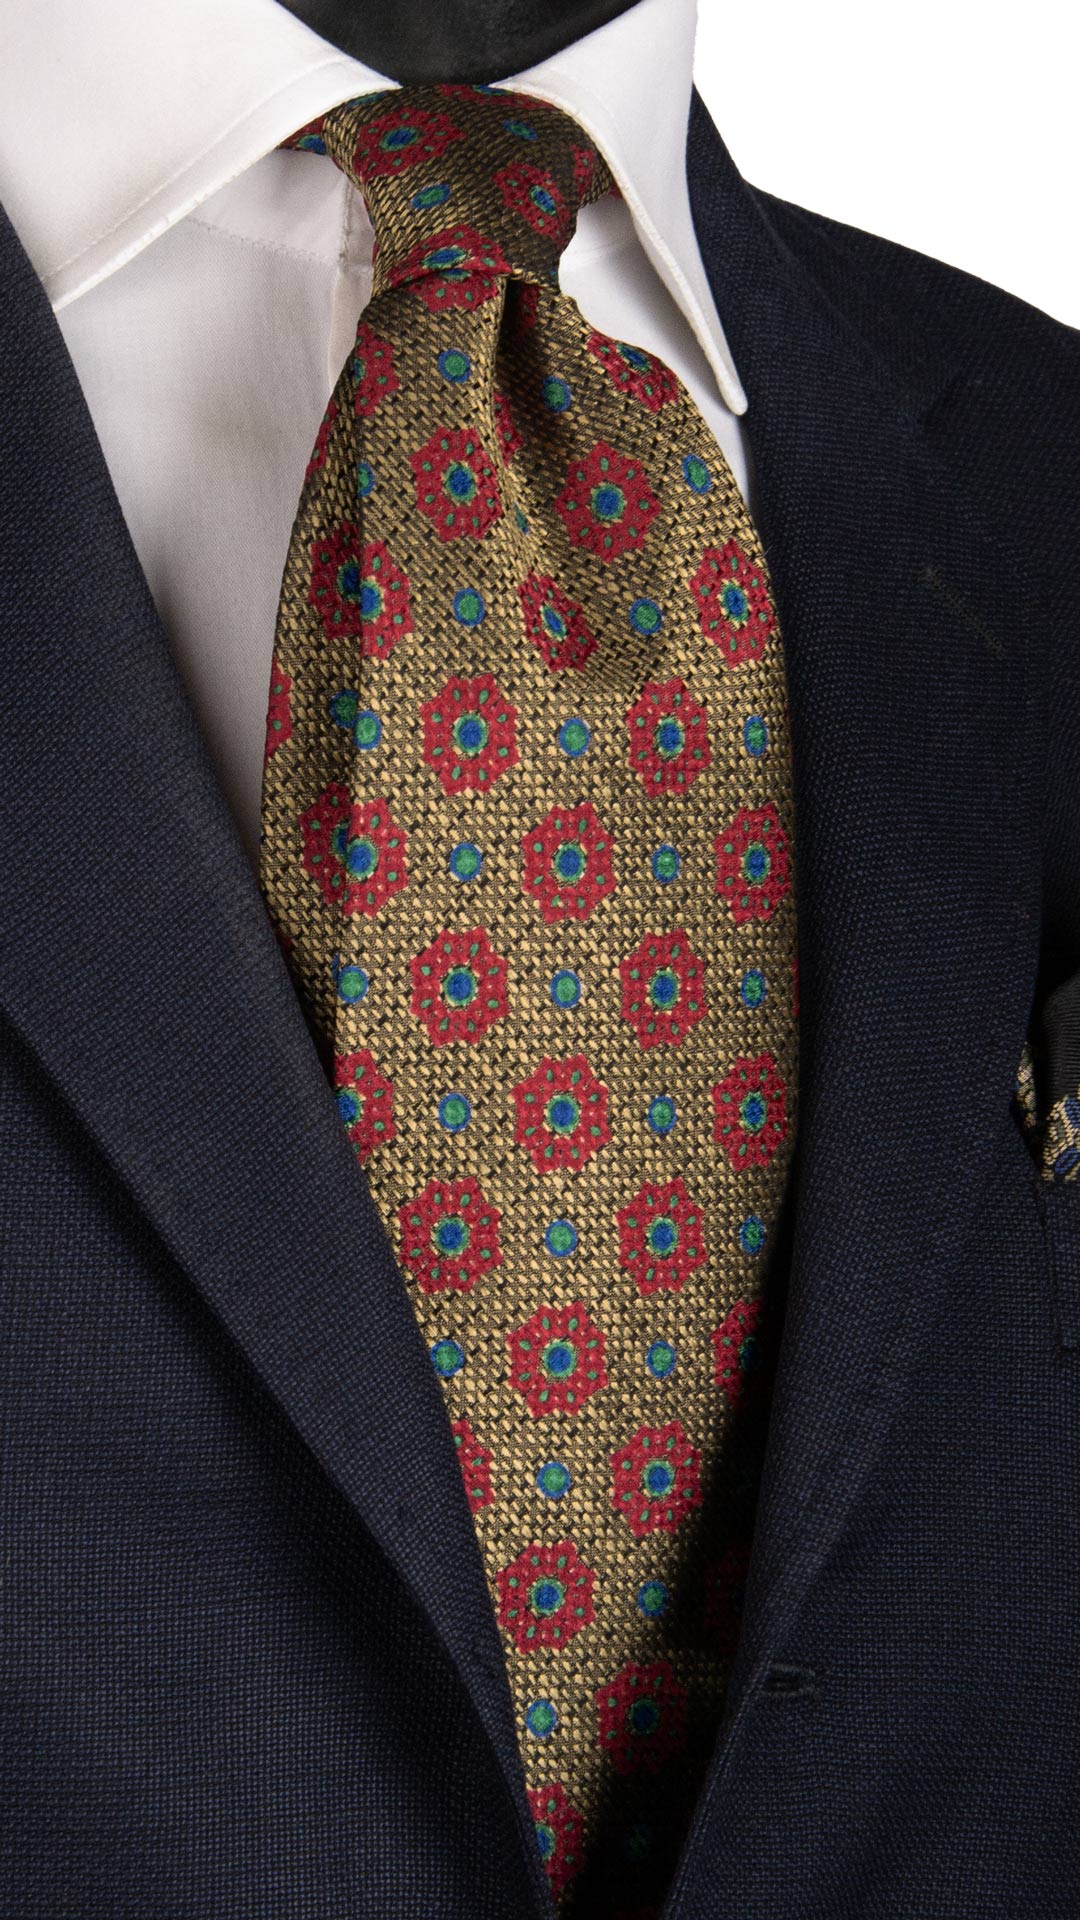 Cravatta Vintage di Seta Jacquard Giallo Oro Fantasia Magenta Blu Verde CV808 Made in Italy Graffeo Cravatte